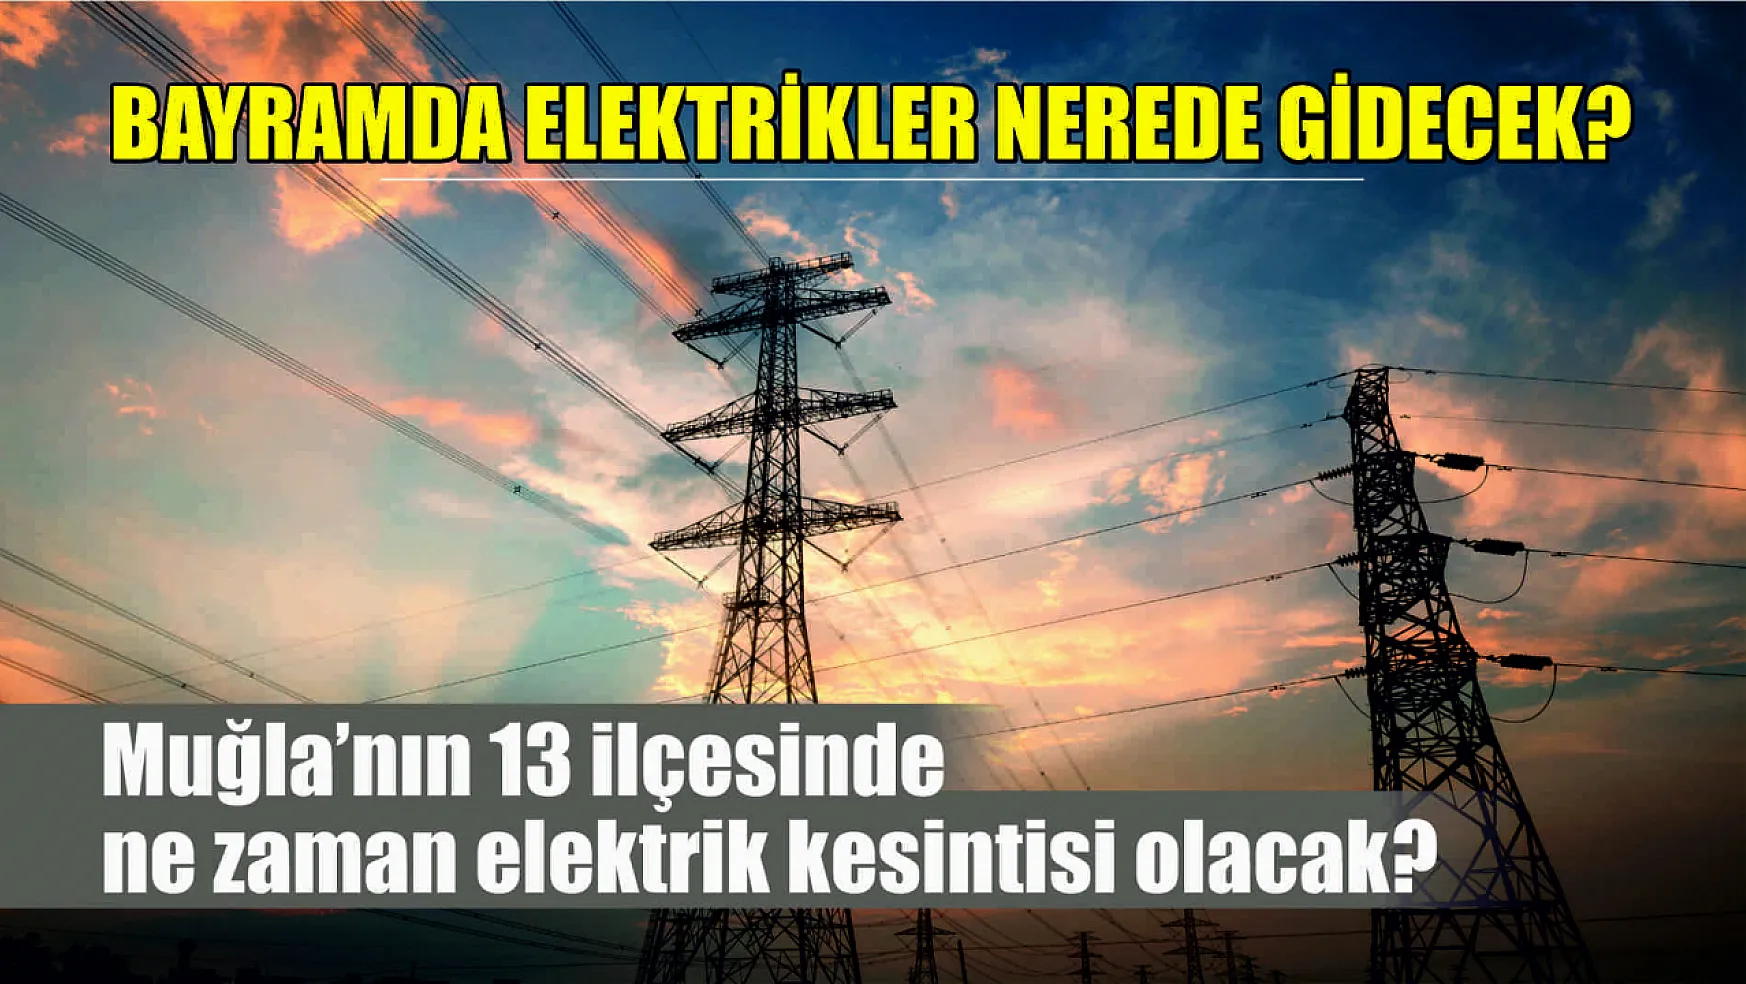 Muğla'nın 13 ilçesinde ne zaman elektrik kesintisi olacak? Muğla'da bayramda elektrikler nerede gidecek?